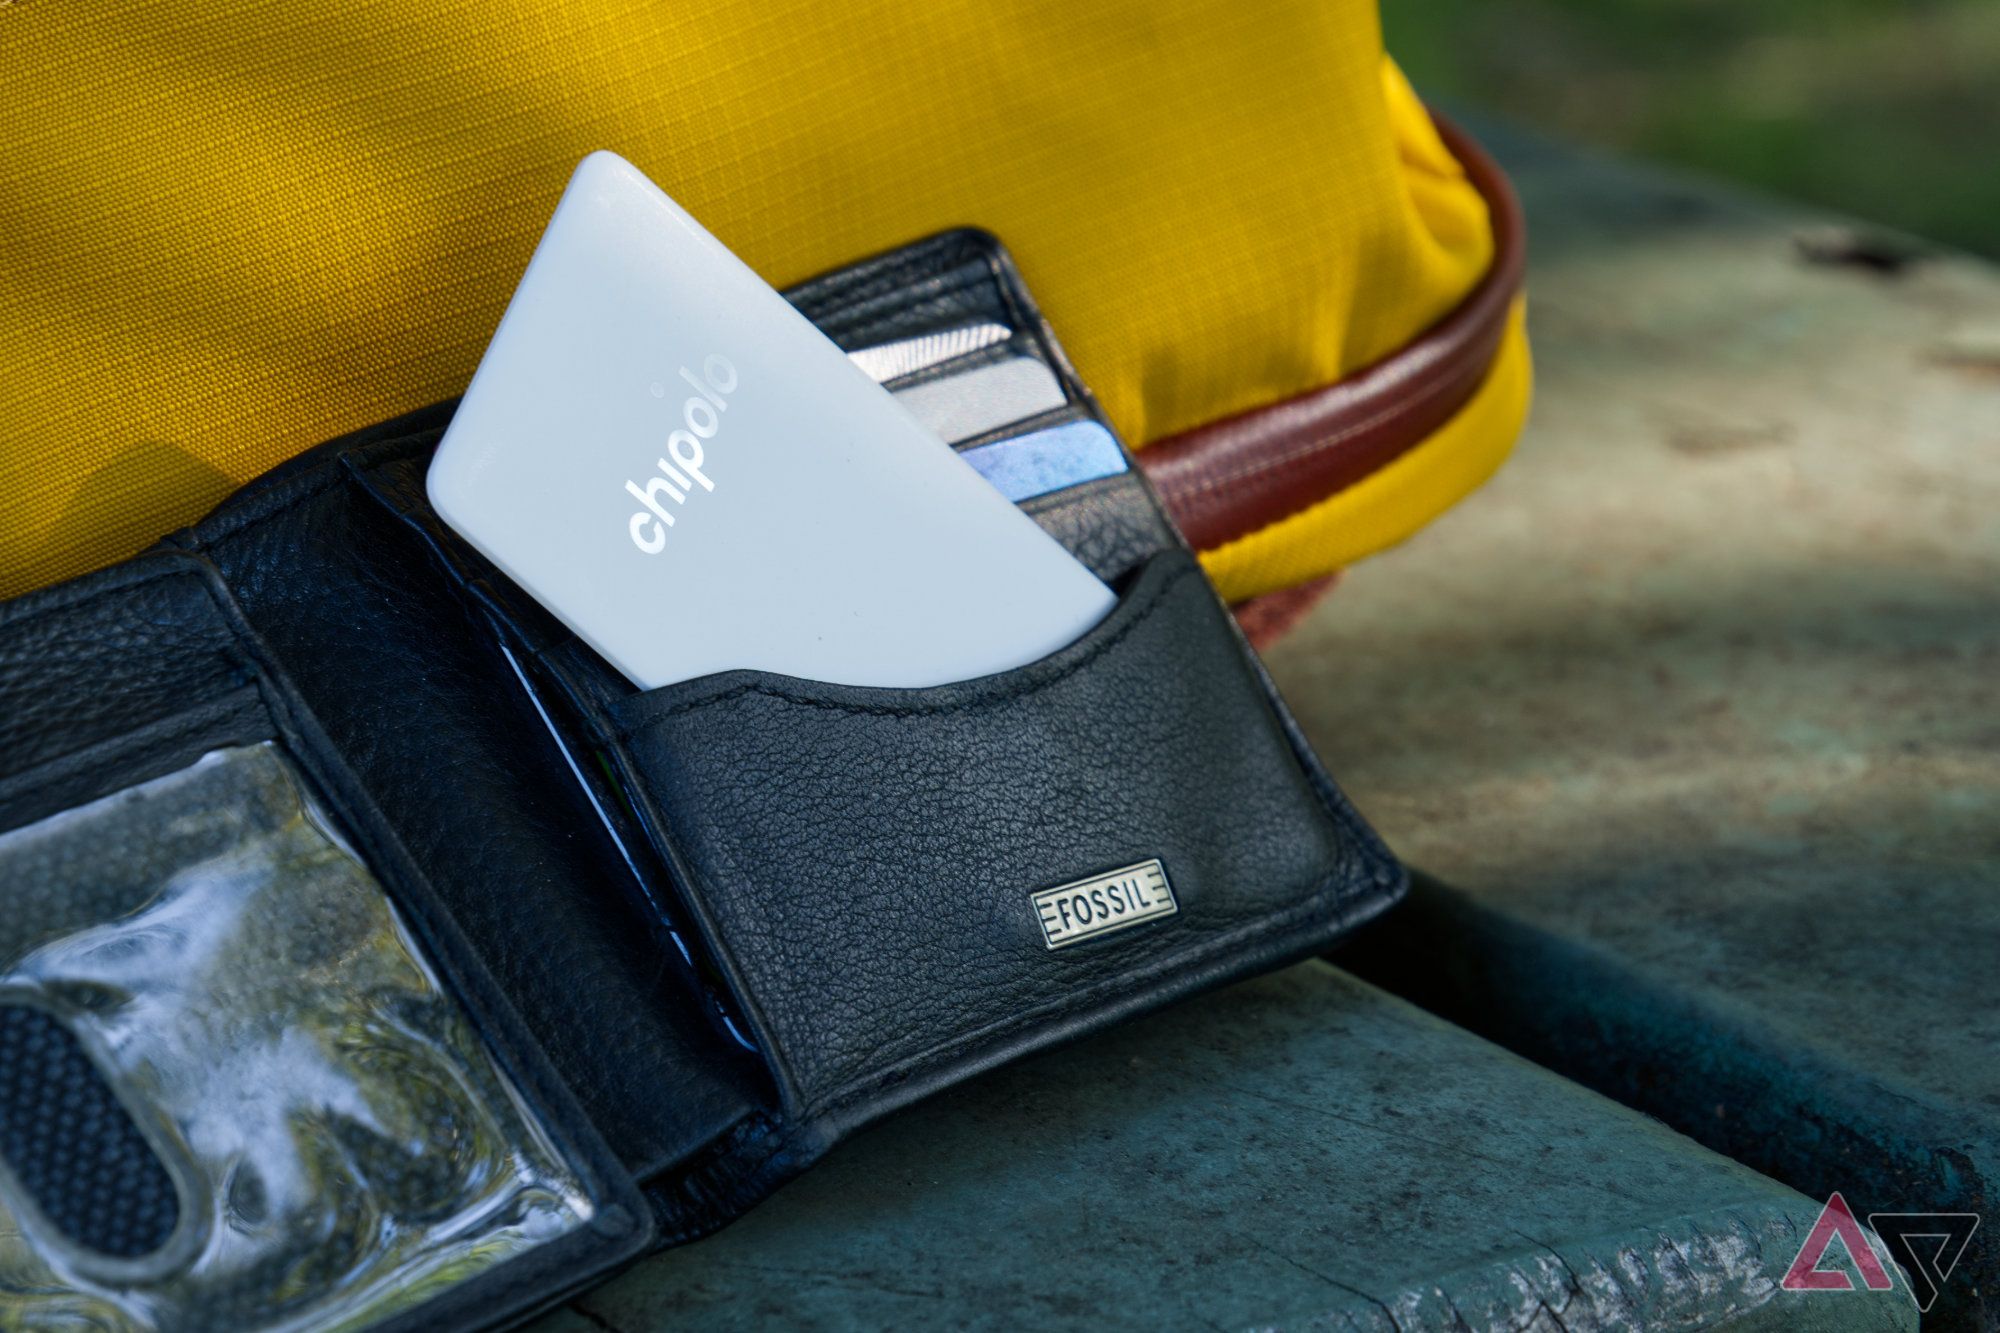 Ponto CARD Chipolo saindo parcialmente de uma carteira de couro aberta apoiada em uma bolsa amarela brilhante sobre uma mesa de piquenique